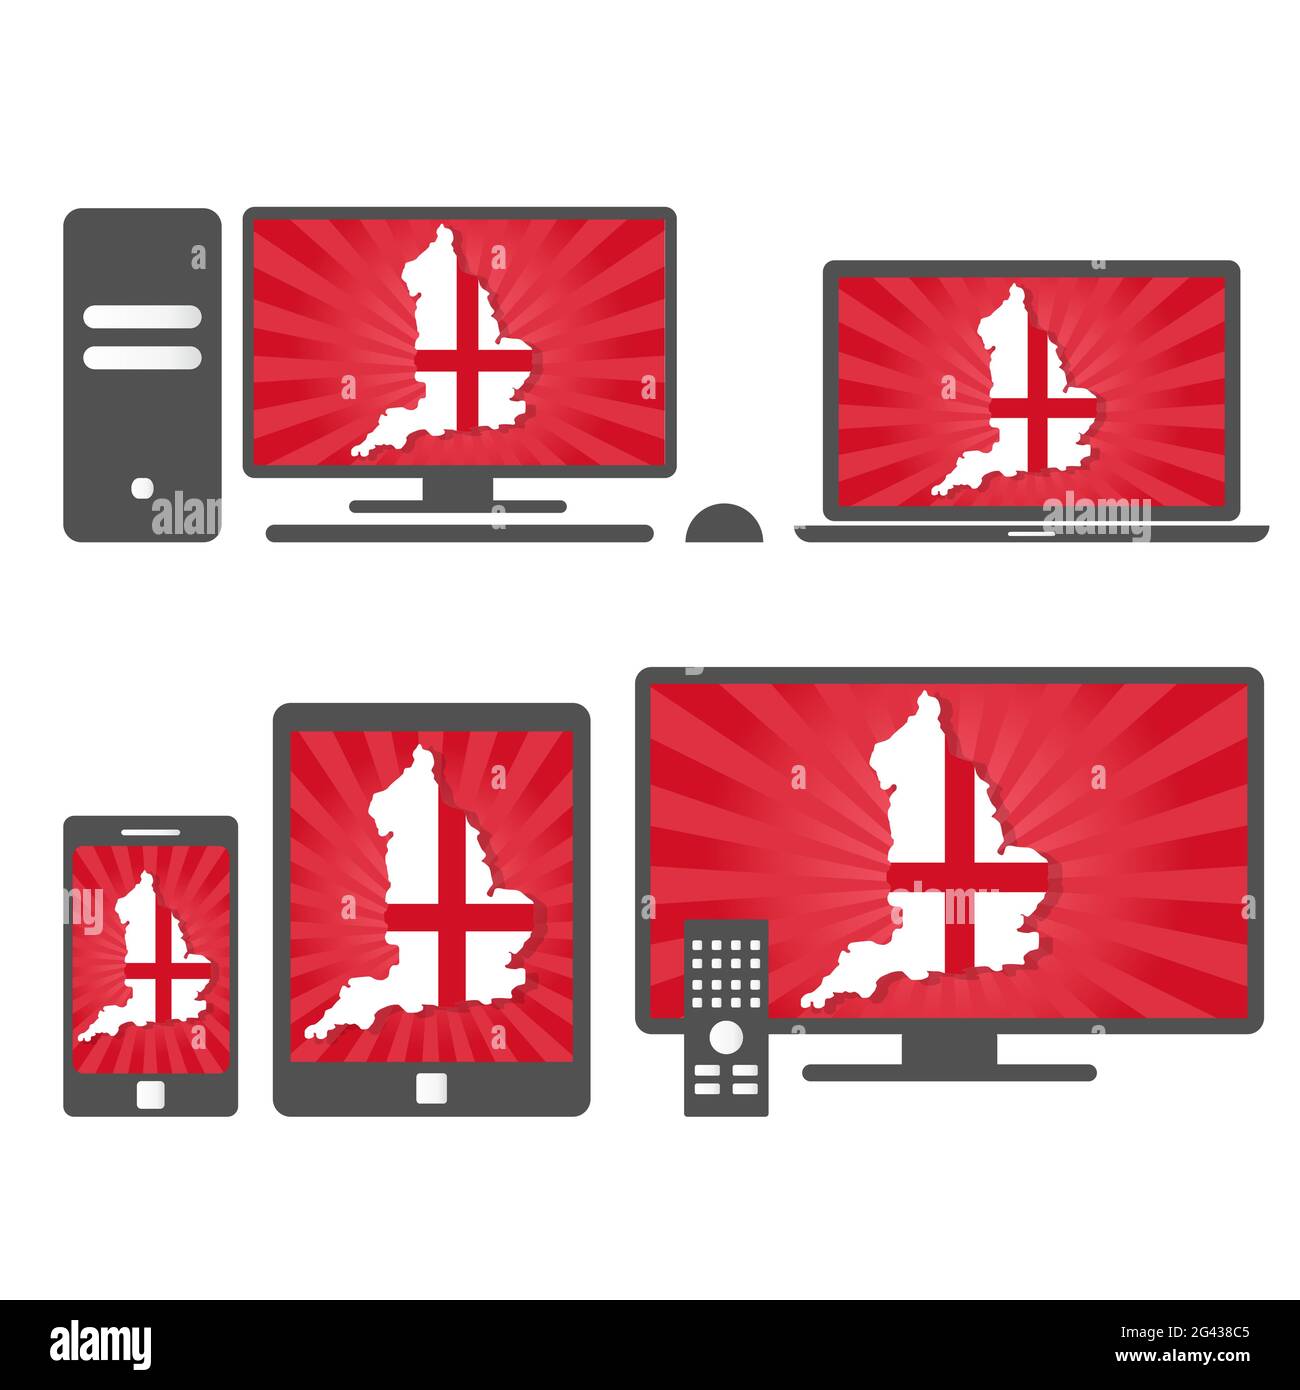 Viele Gerätemedien (Tablet, pc, Handy, Laptop, Smart tv) mit der Karte und Flagge Englands Stock Vektor